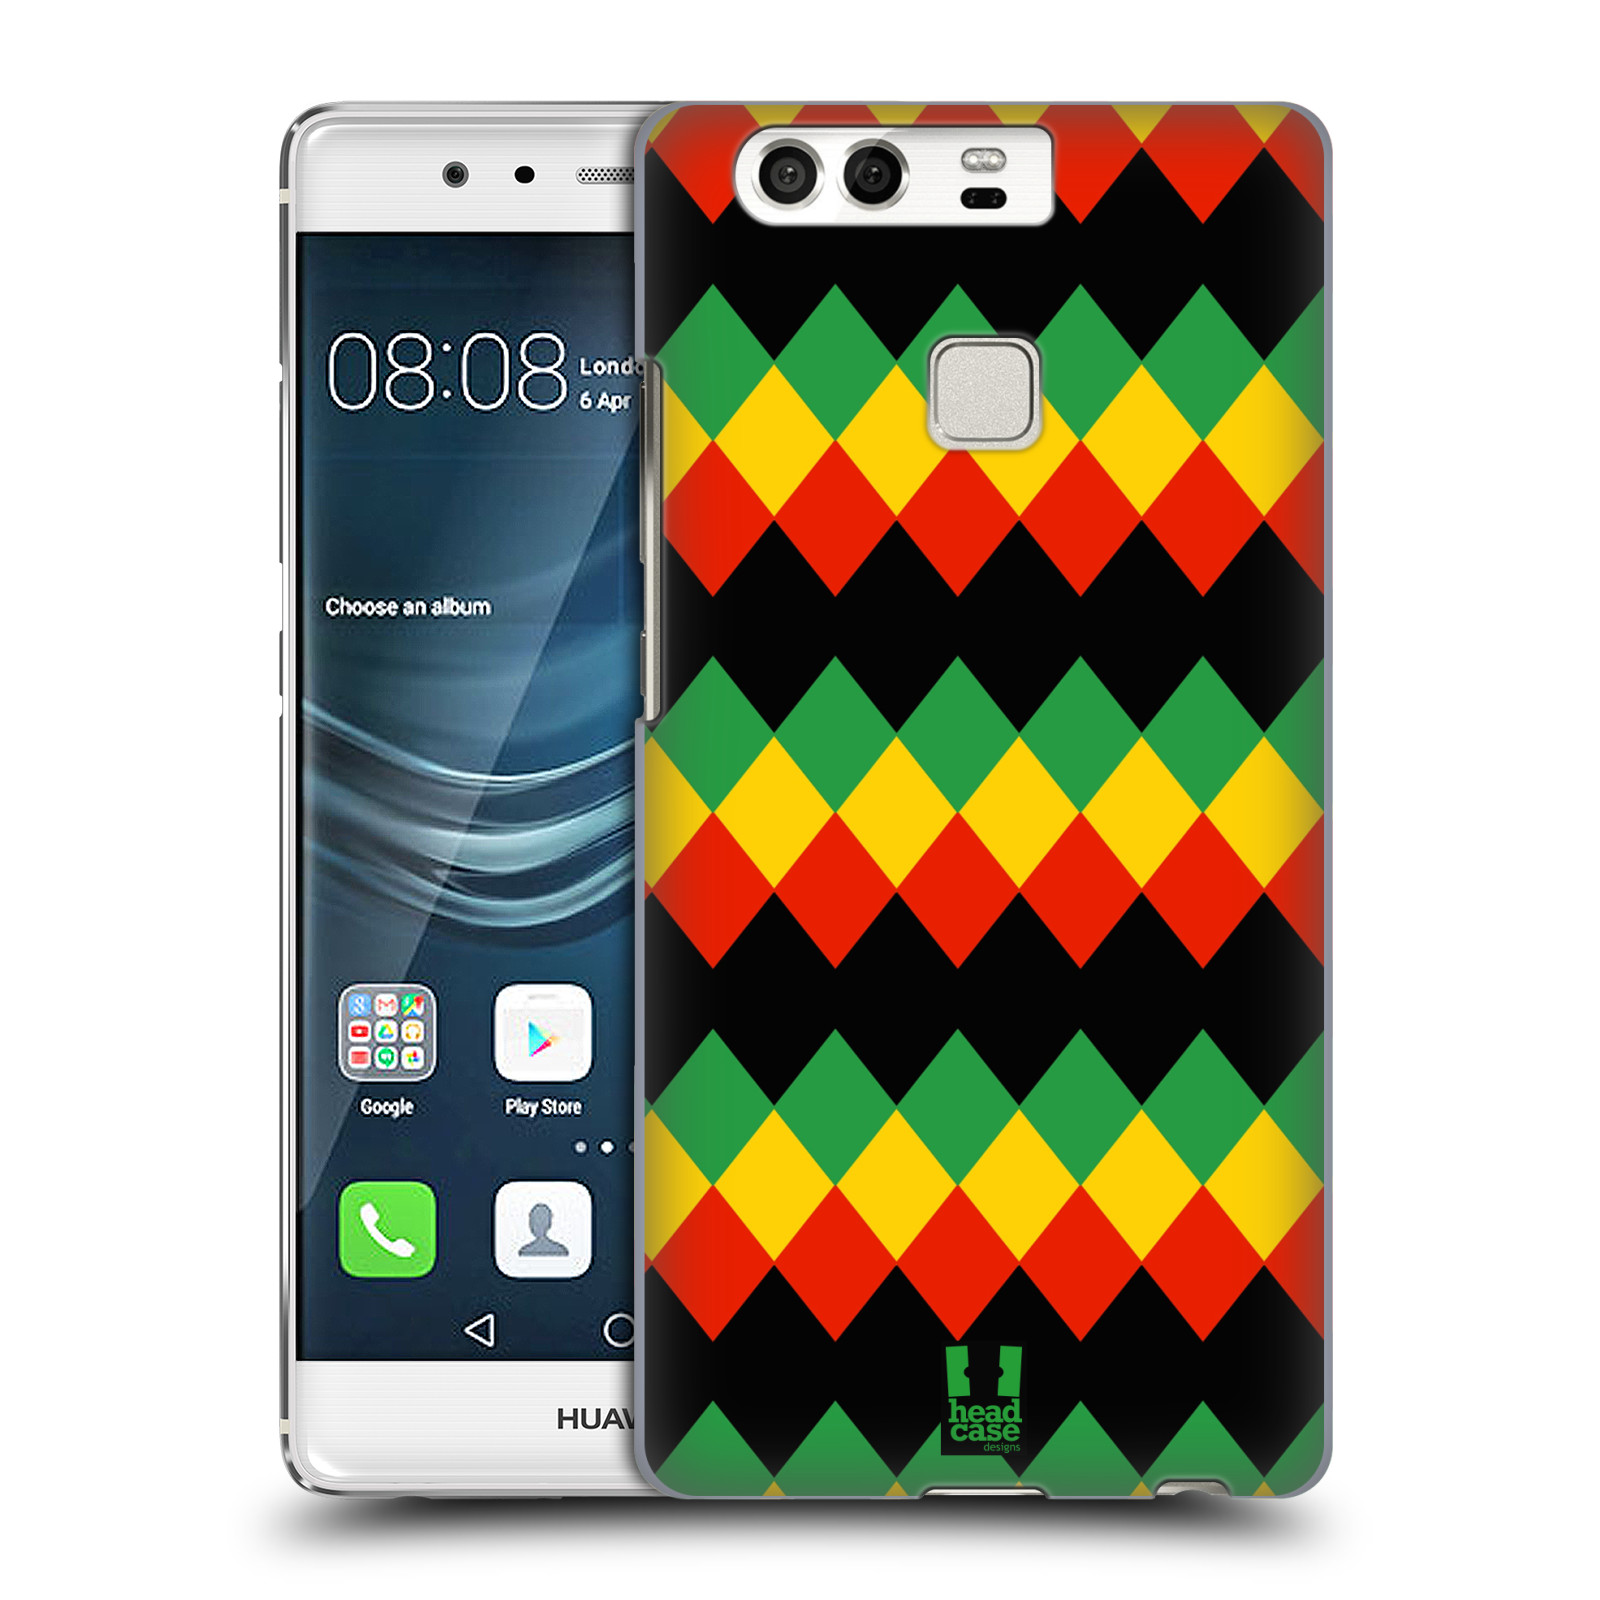 HEAD CASE plastový obal na mobil Huawei P9 / P9 DUAL SIM vzor Rasta barevné vzory DIAMANT